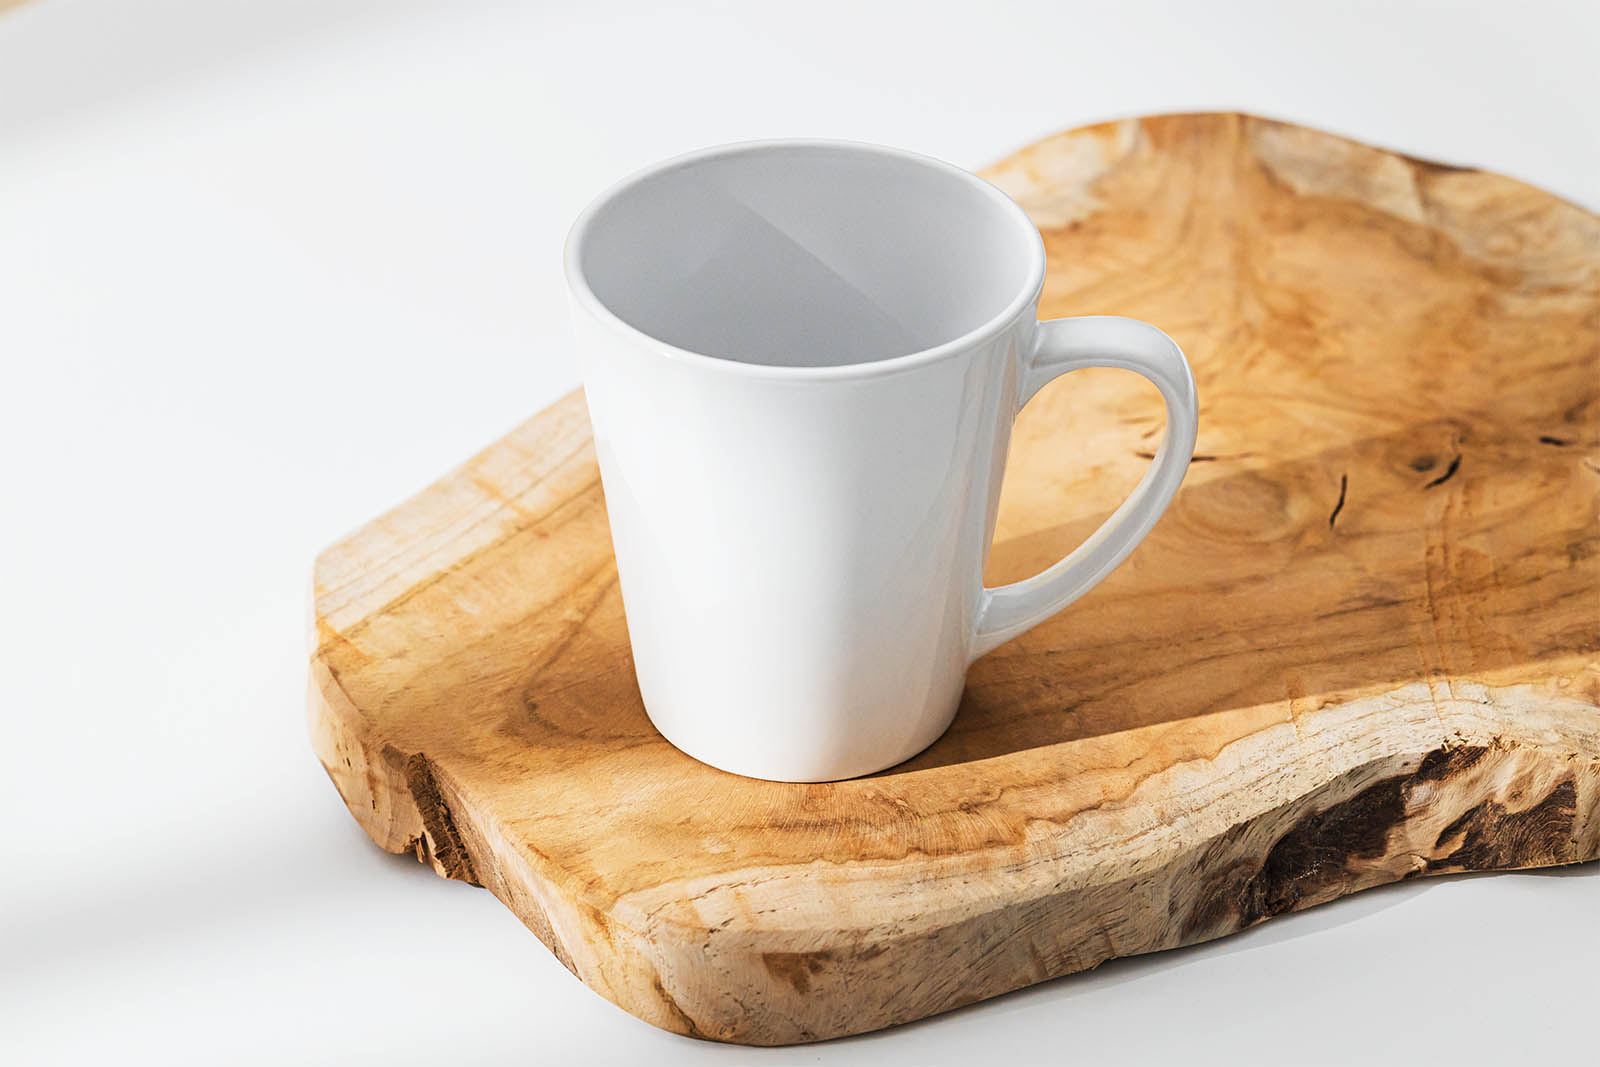 Ceramic mug on a slice of wood mockup